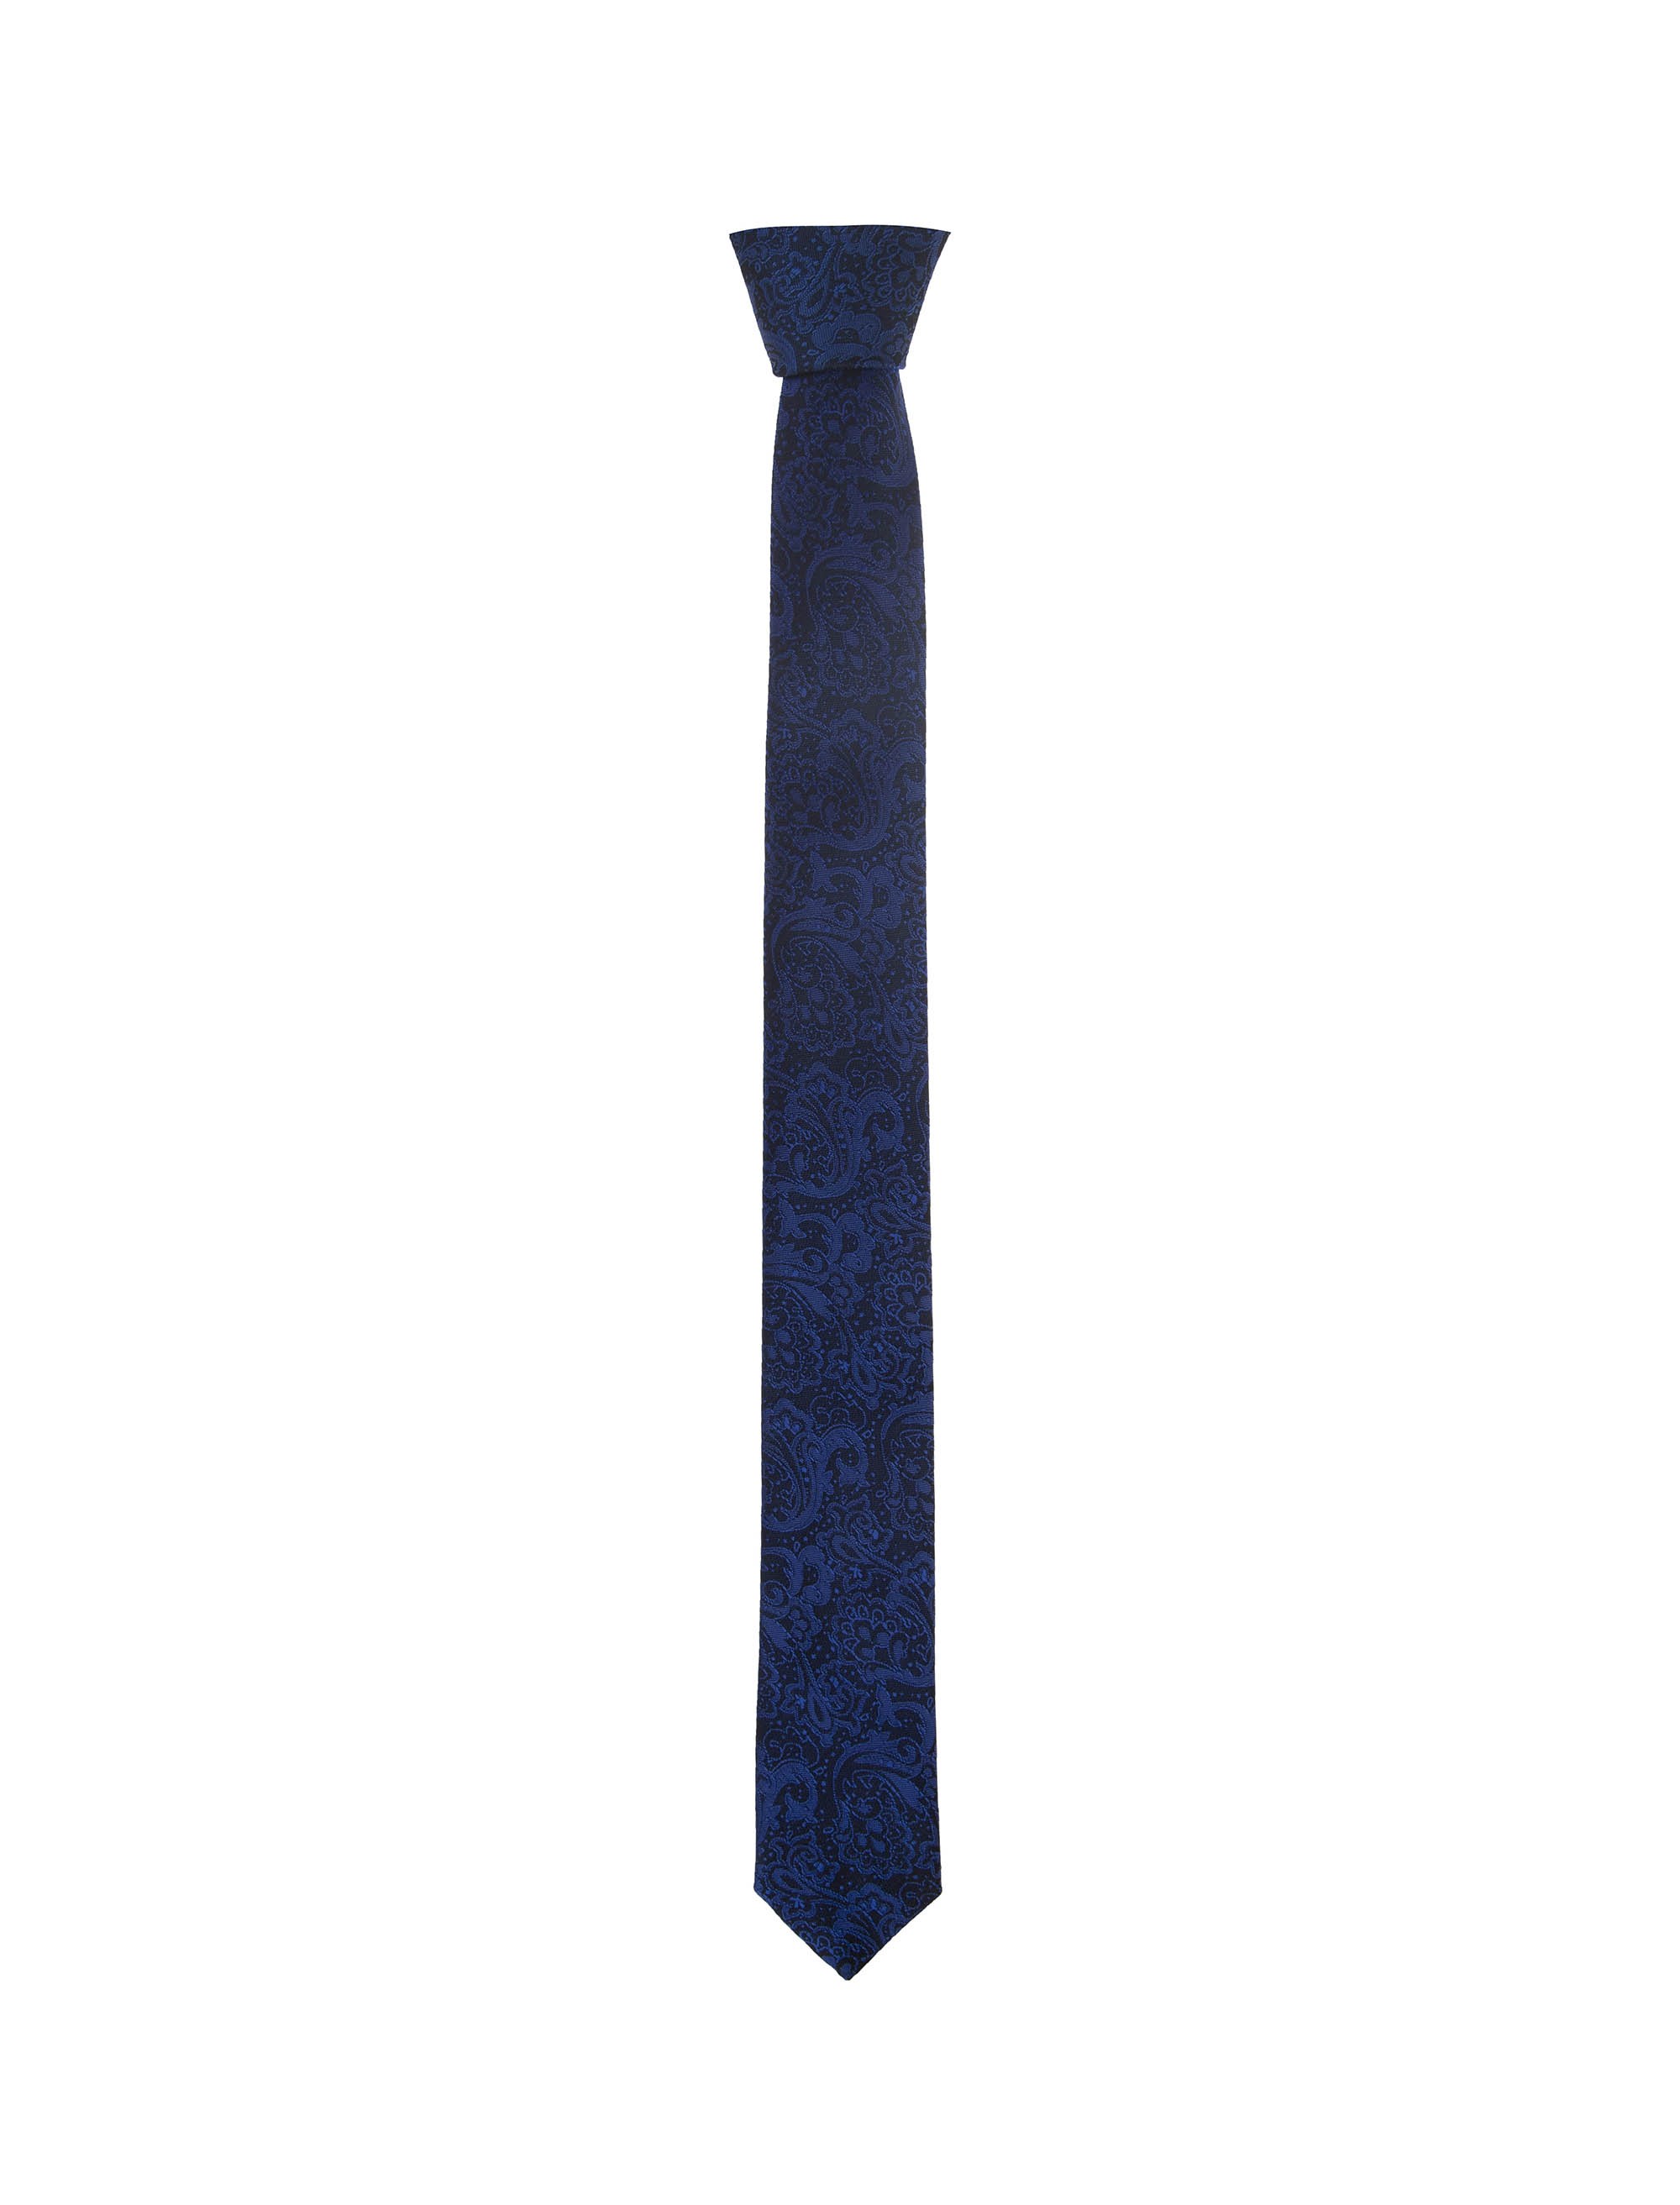 کراوات ابریشم طرح دار مردانه - پاترون تک سایز - آبي مشکي - 2